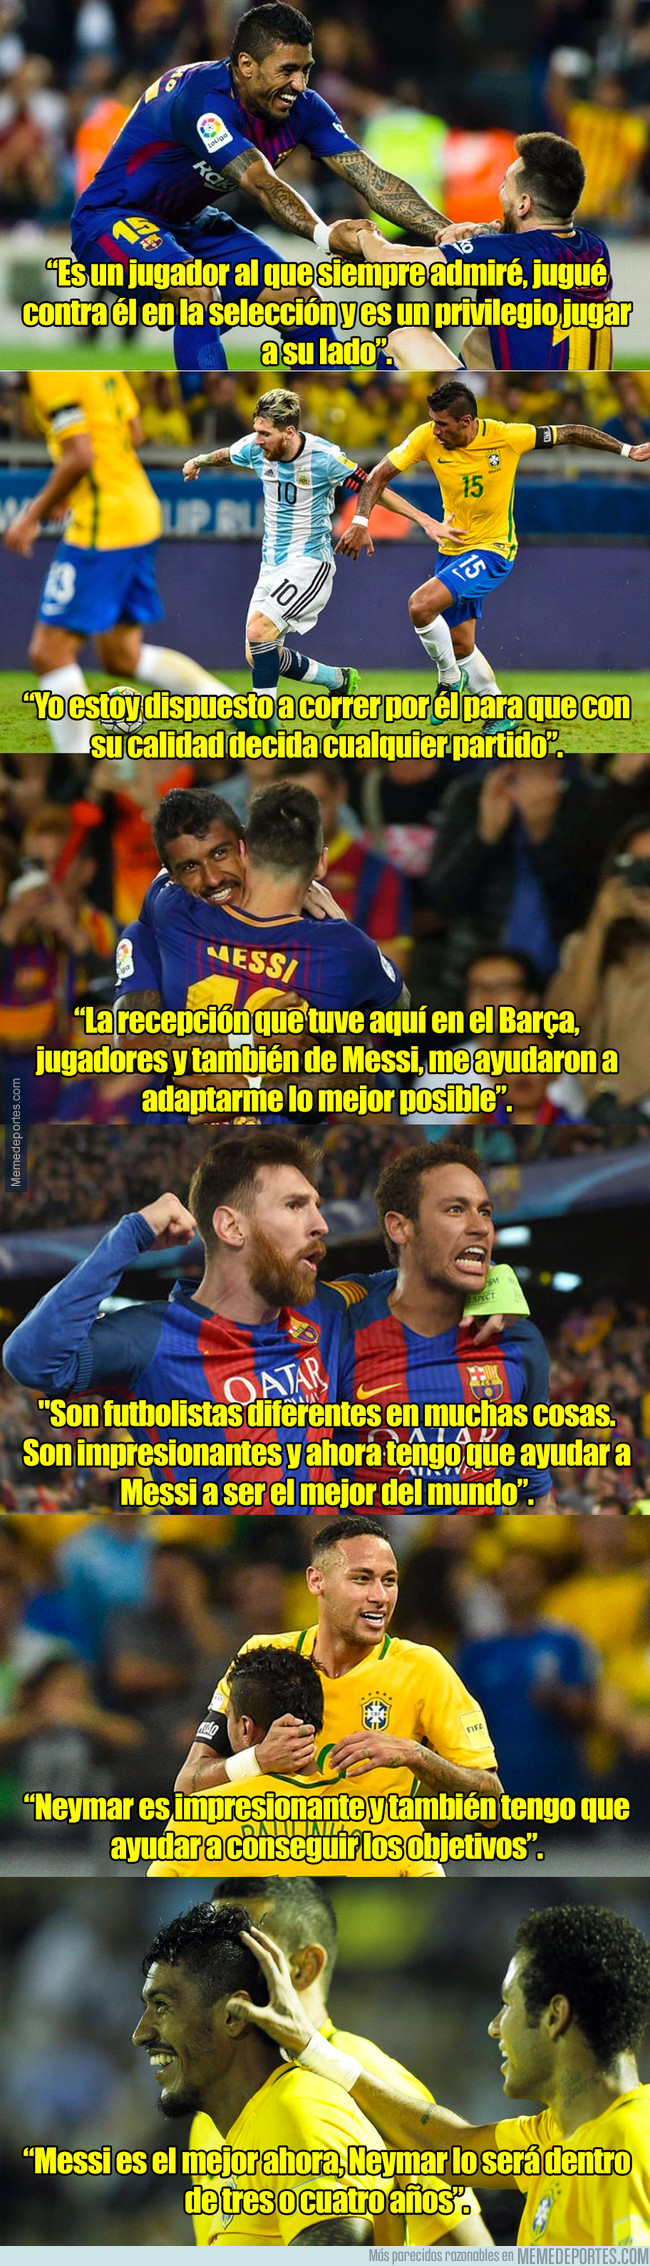 1004601 - Las diferencias entre jugar con Neymar y Messi según Paulinho